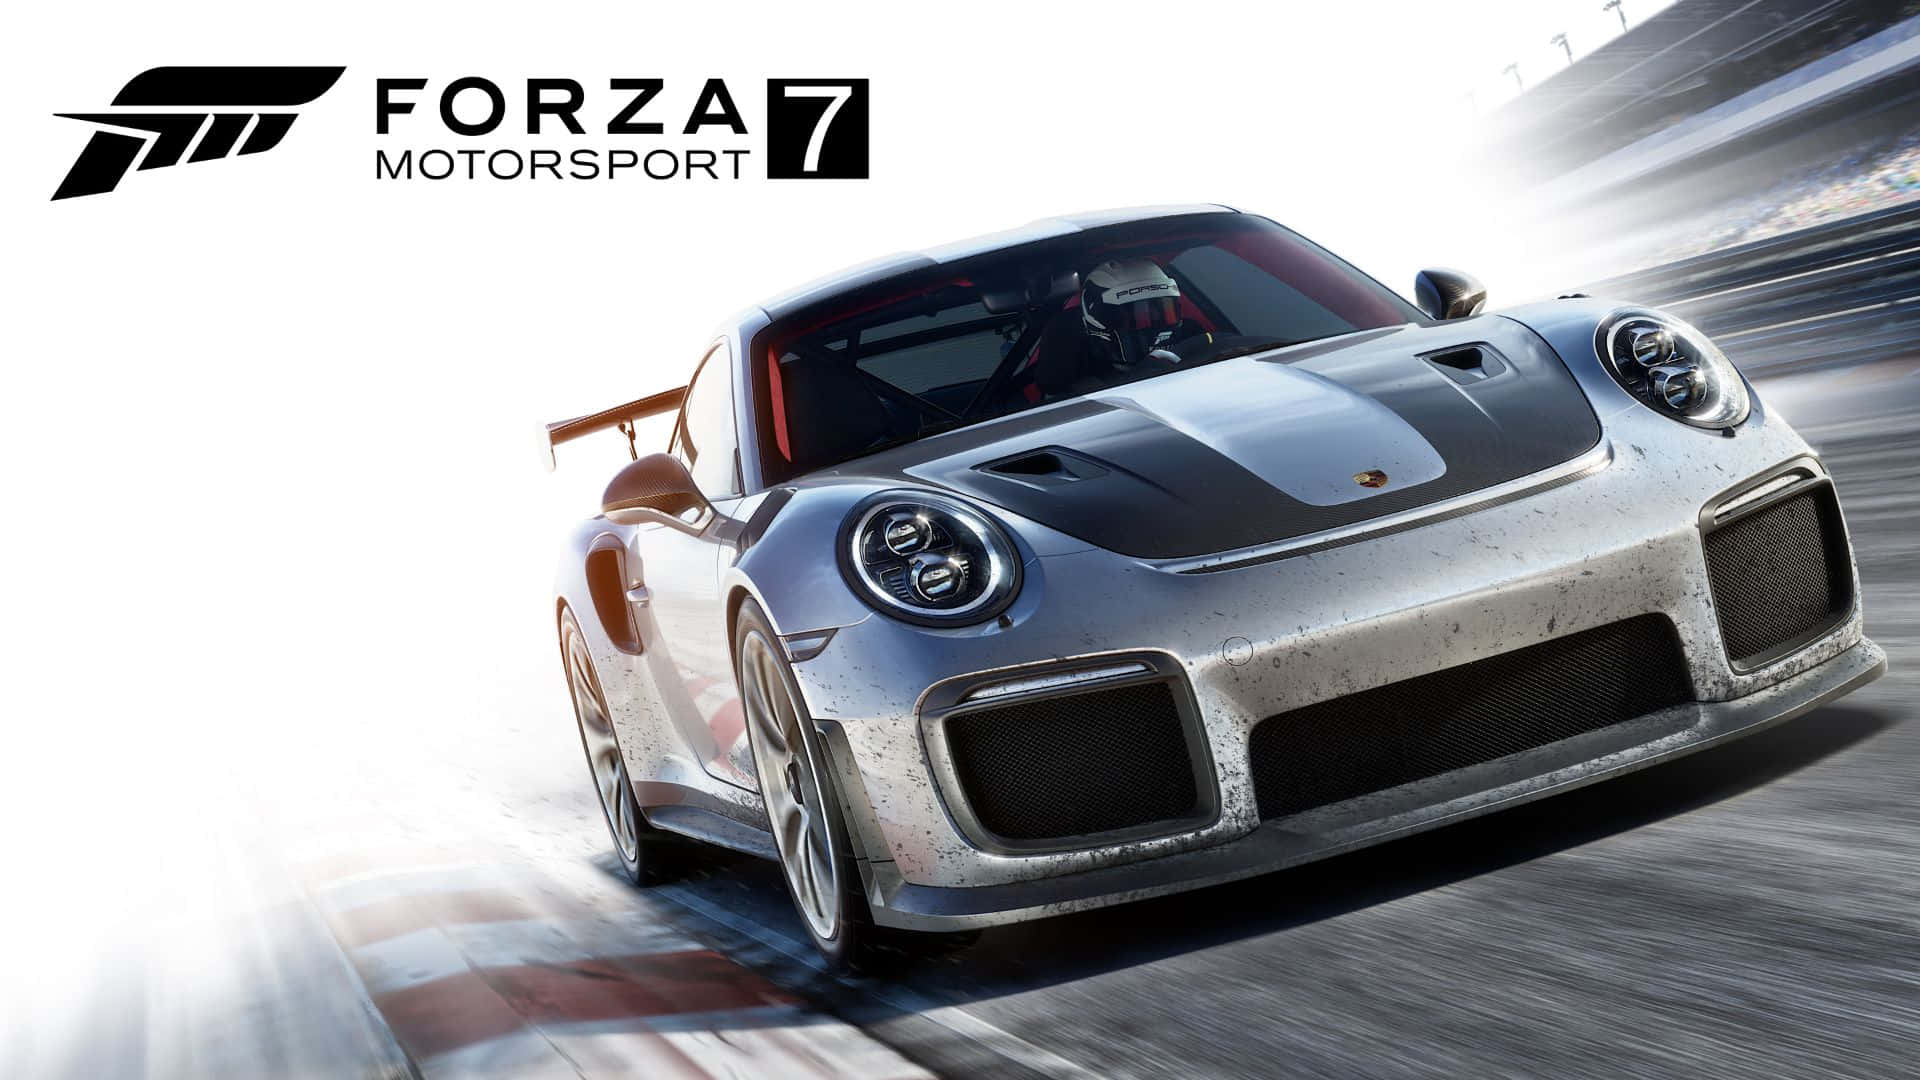 Hd Bakgrundsbild För Forza Motorsport 7 Och Porsche 911 Gt2 Rs Mobil Bakgrundsbild.